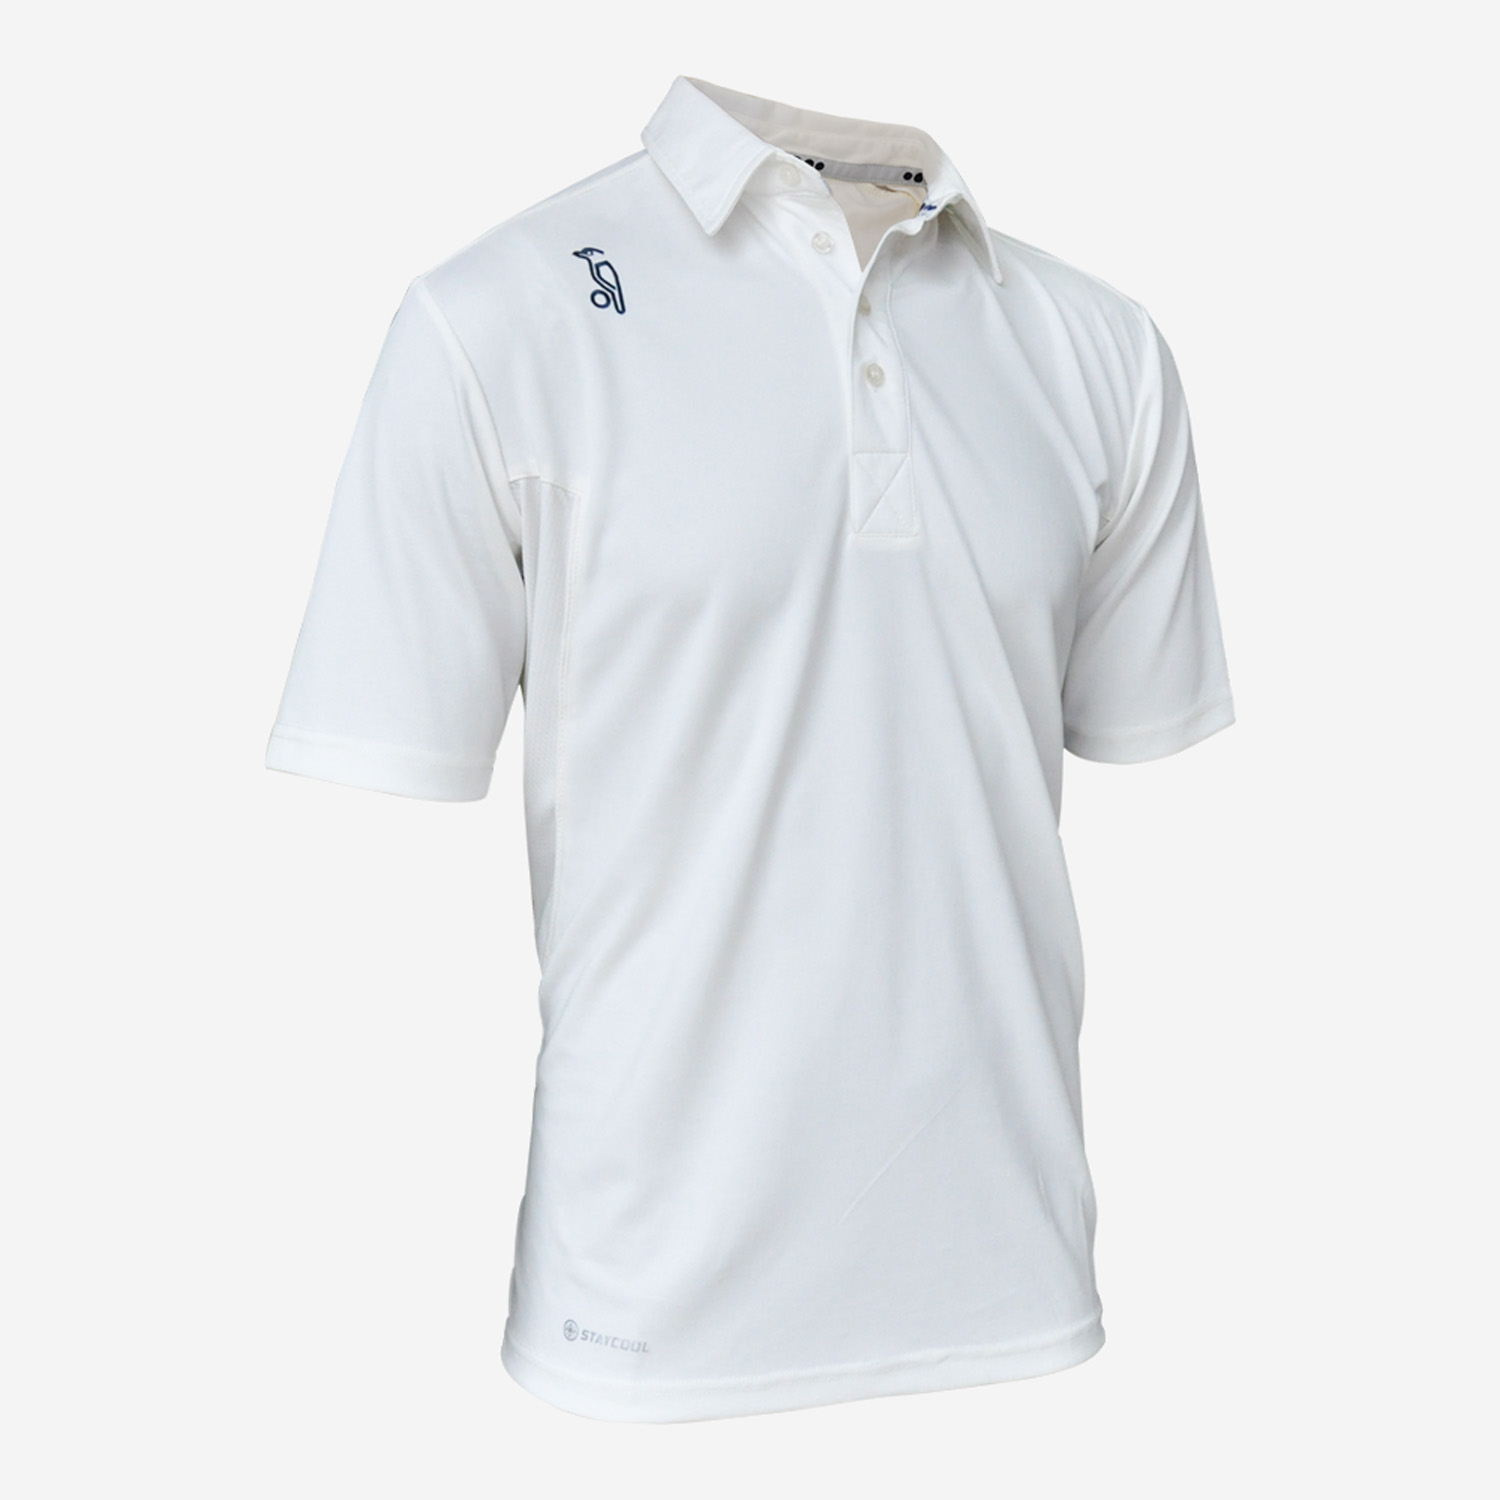 Kookaburra Cricket Shirt